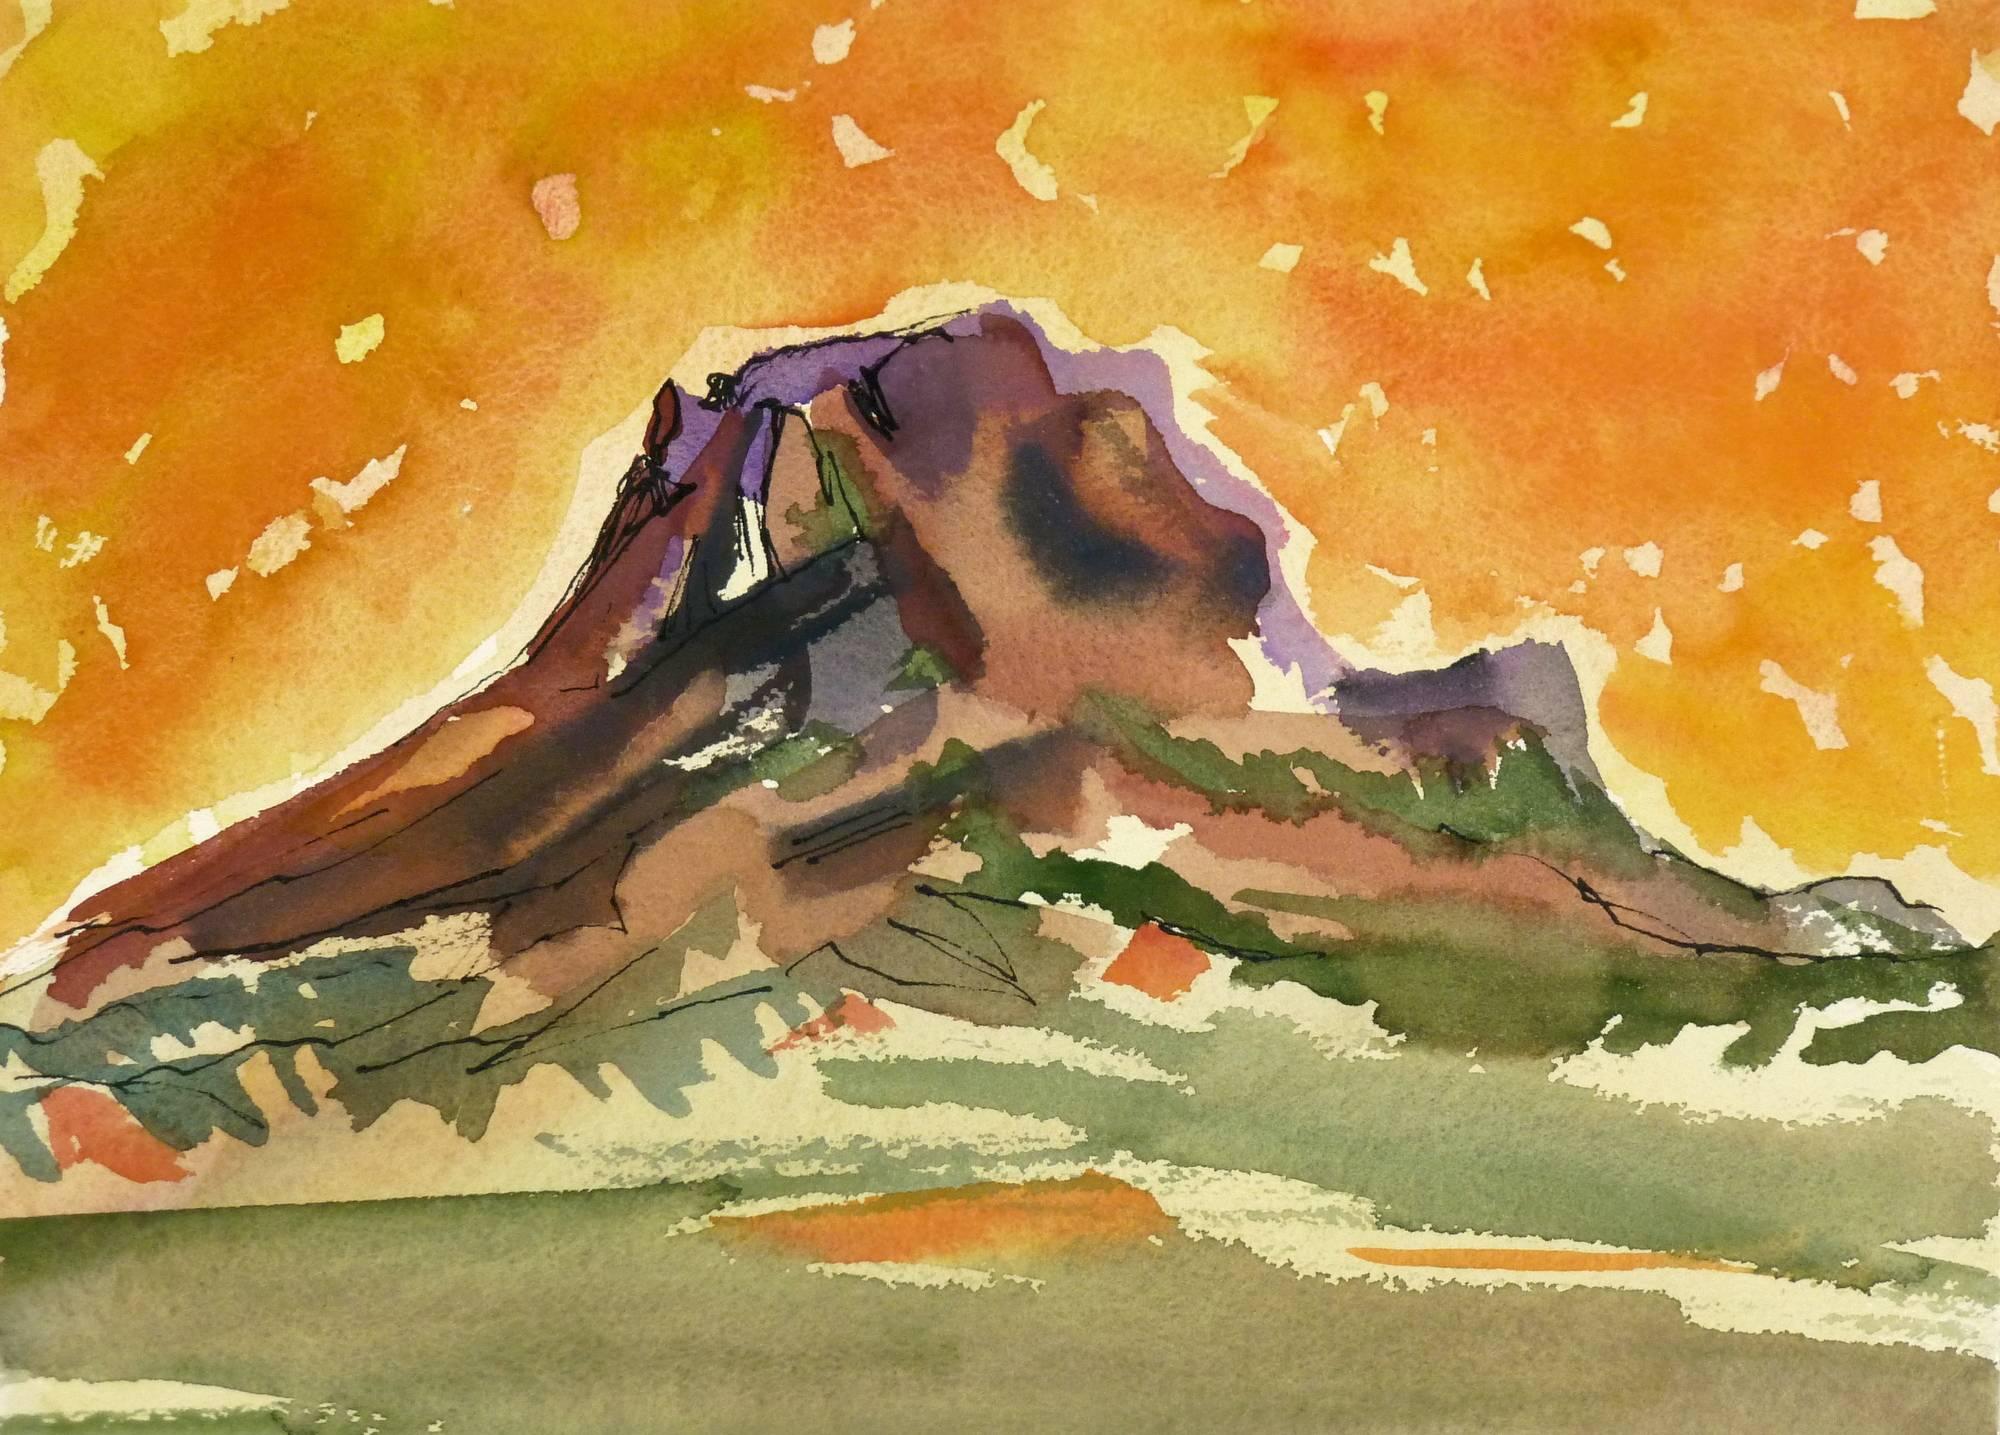 Unknown Landscape Art - Watercolor - Fiery Mountain Top Landscape